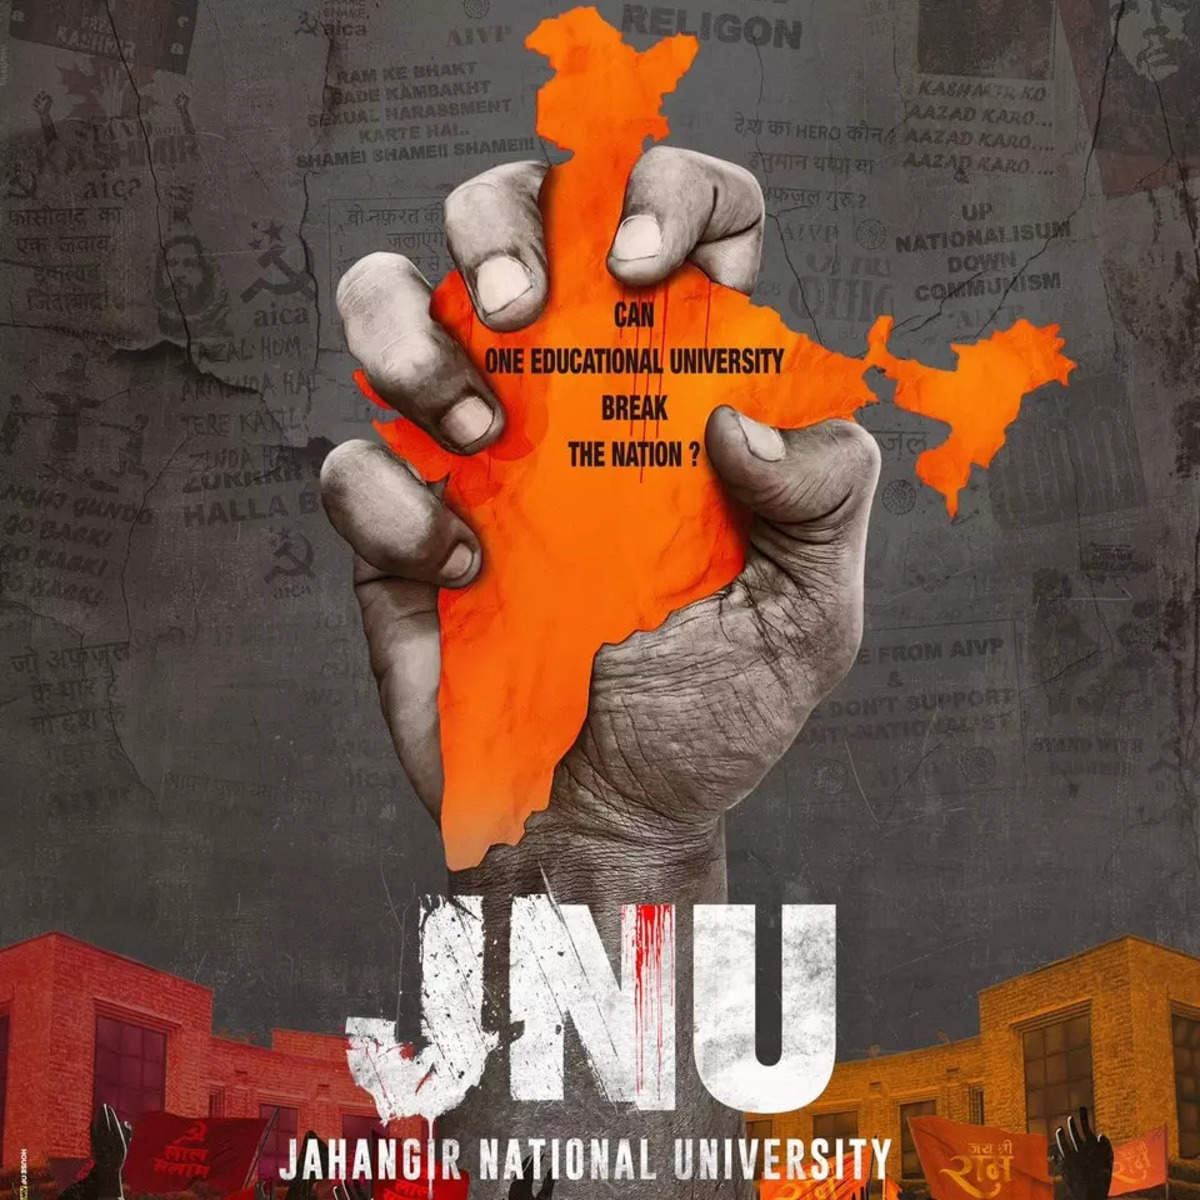 JNU Social Media Poster: विनय शर्मा ने जेएनयू: जहांगीर नेशनल यूनिवर्सिटी को निर्देशित किया है, जो अप्रैल में रिलीज़ होगा। Film title जवाहरलाल नेहरू विश्वविद्यालय से संबंधित है।